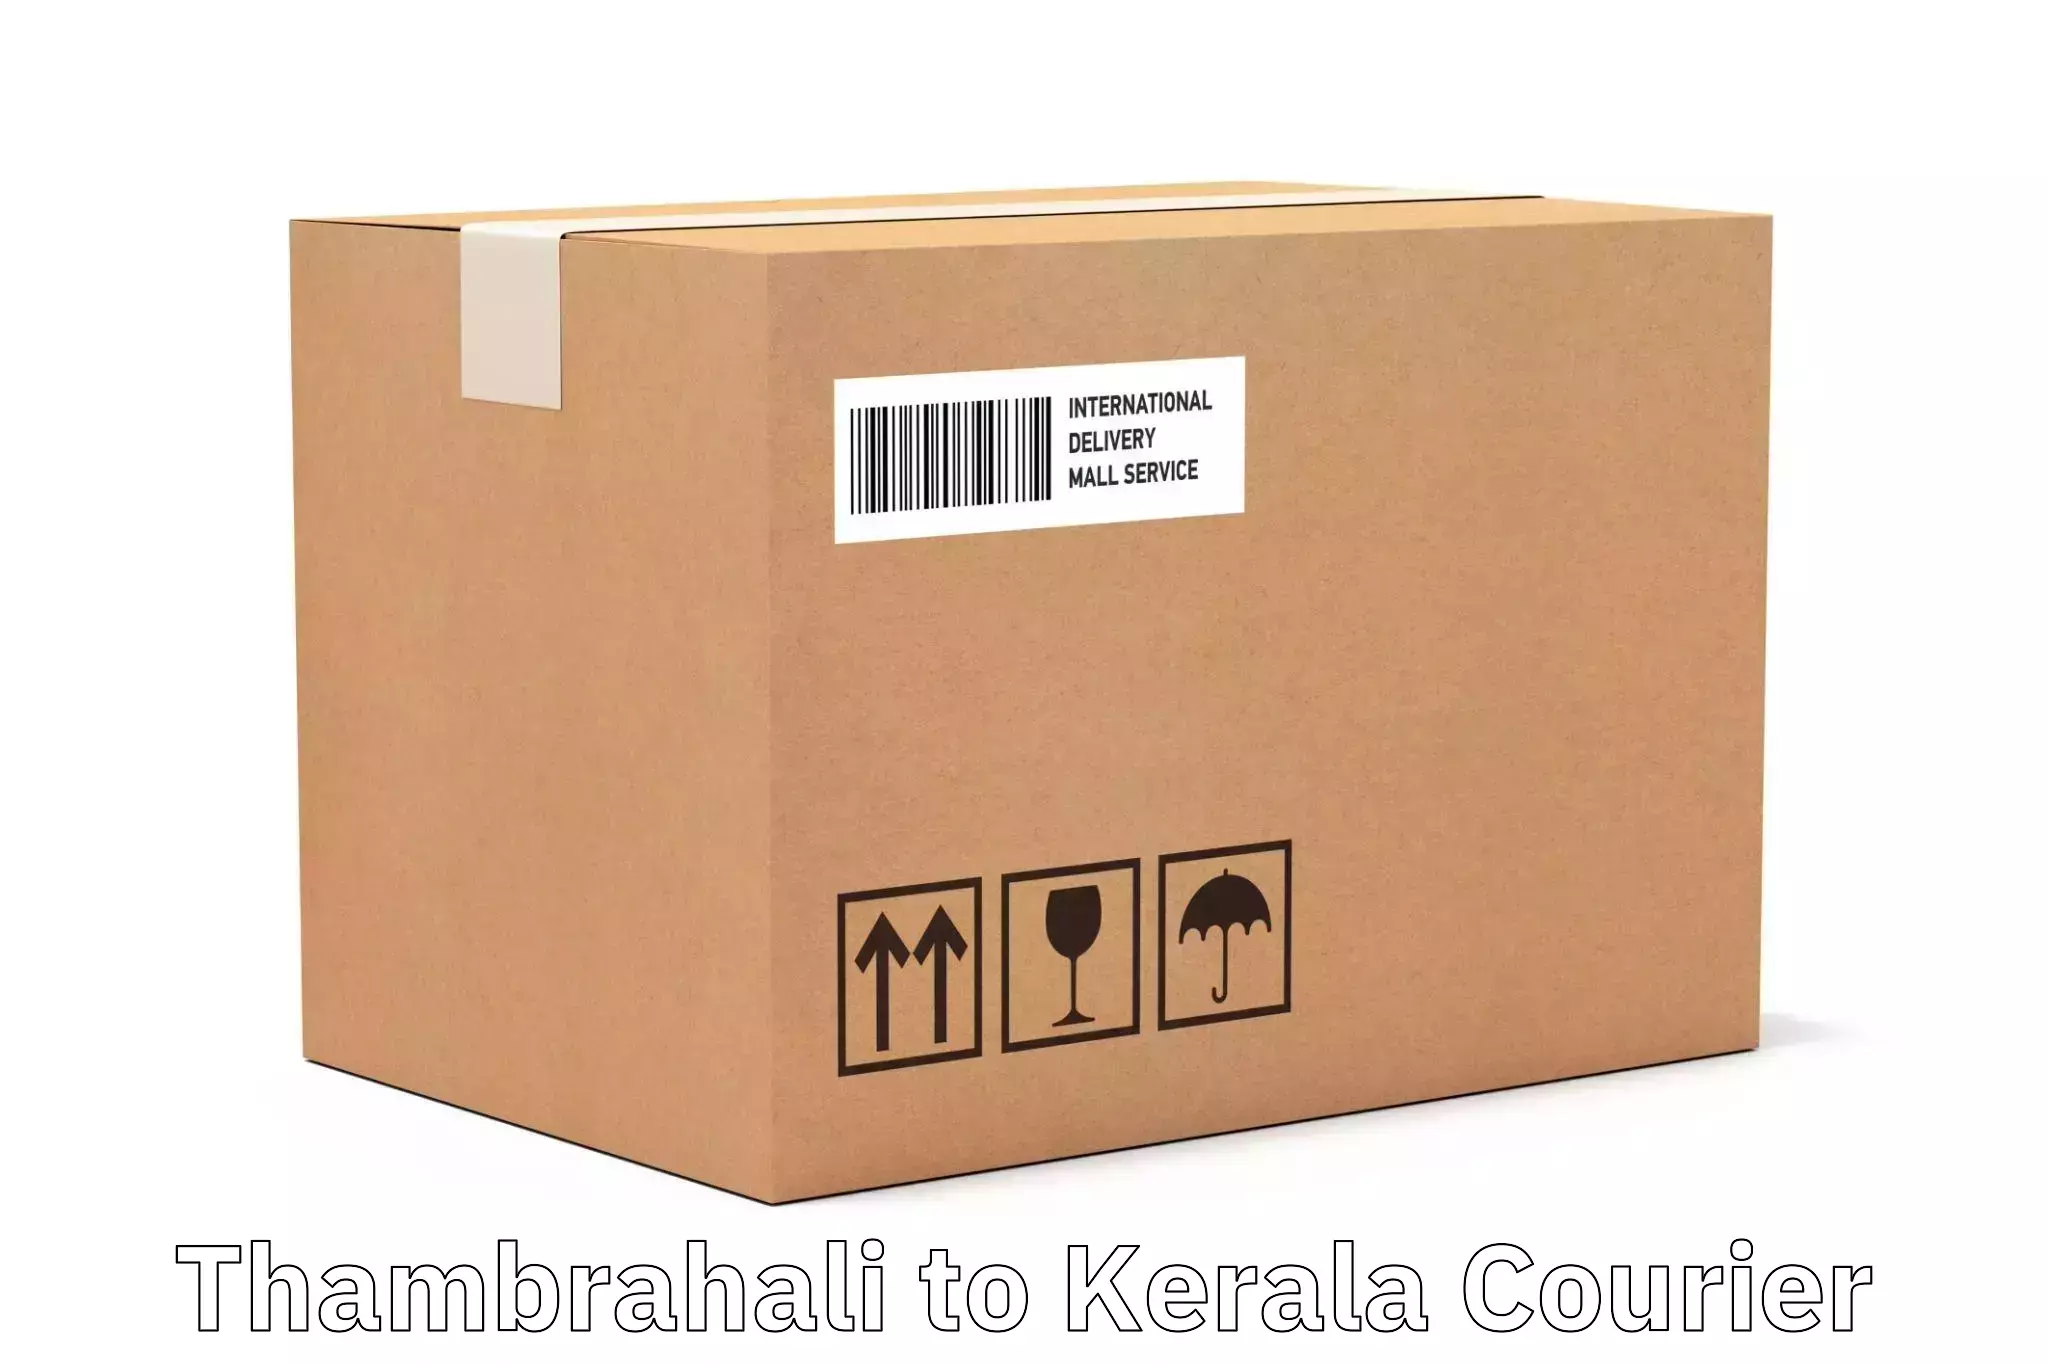 Logistics efficiency Thambrahali to Kattappana